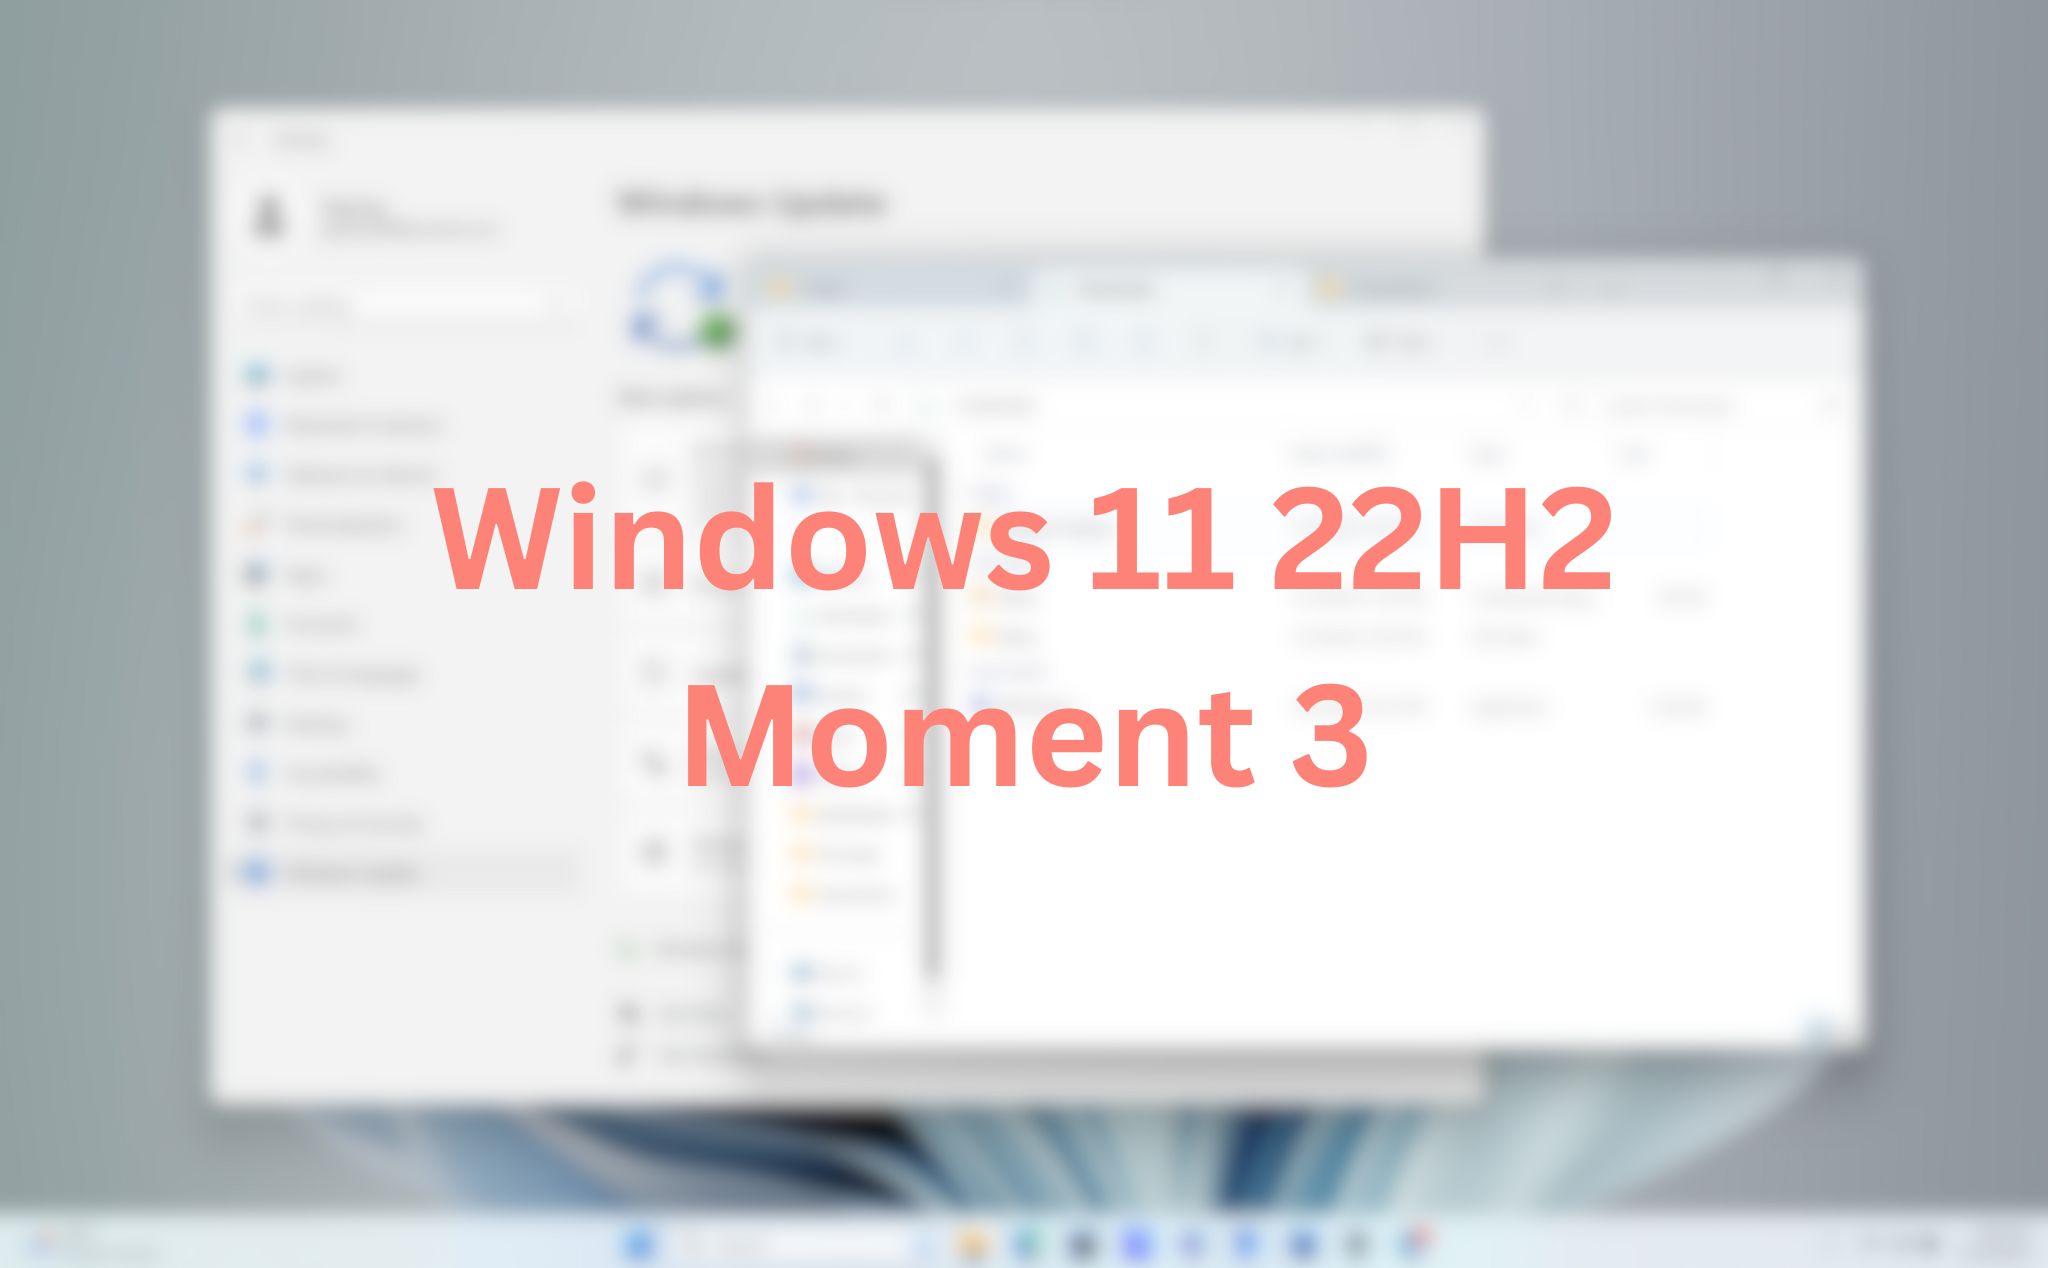 Windows 11 22H2 "Moment 3" sắp phát hành có gì hot?